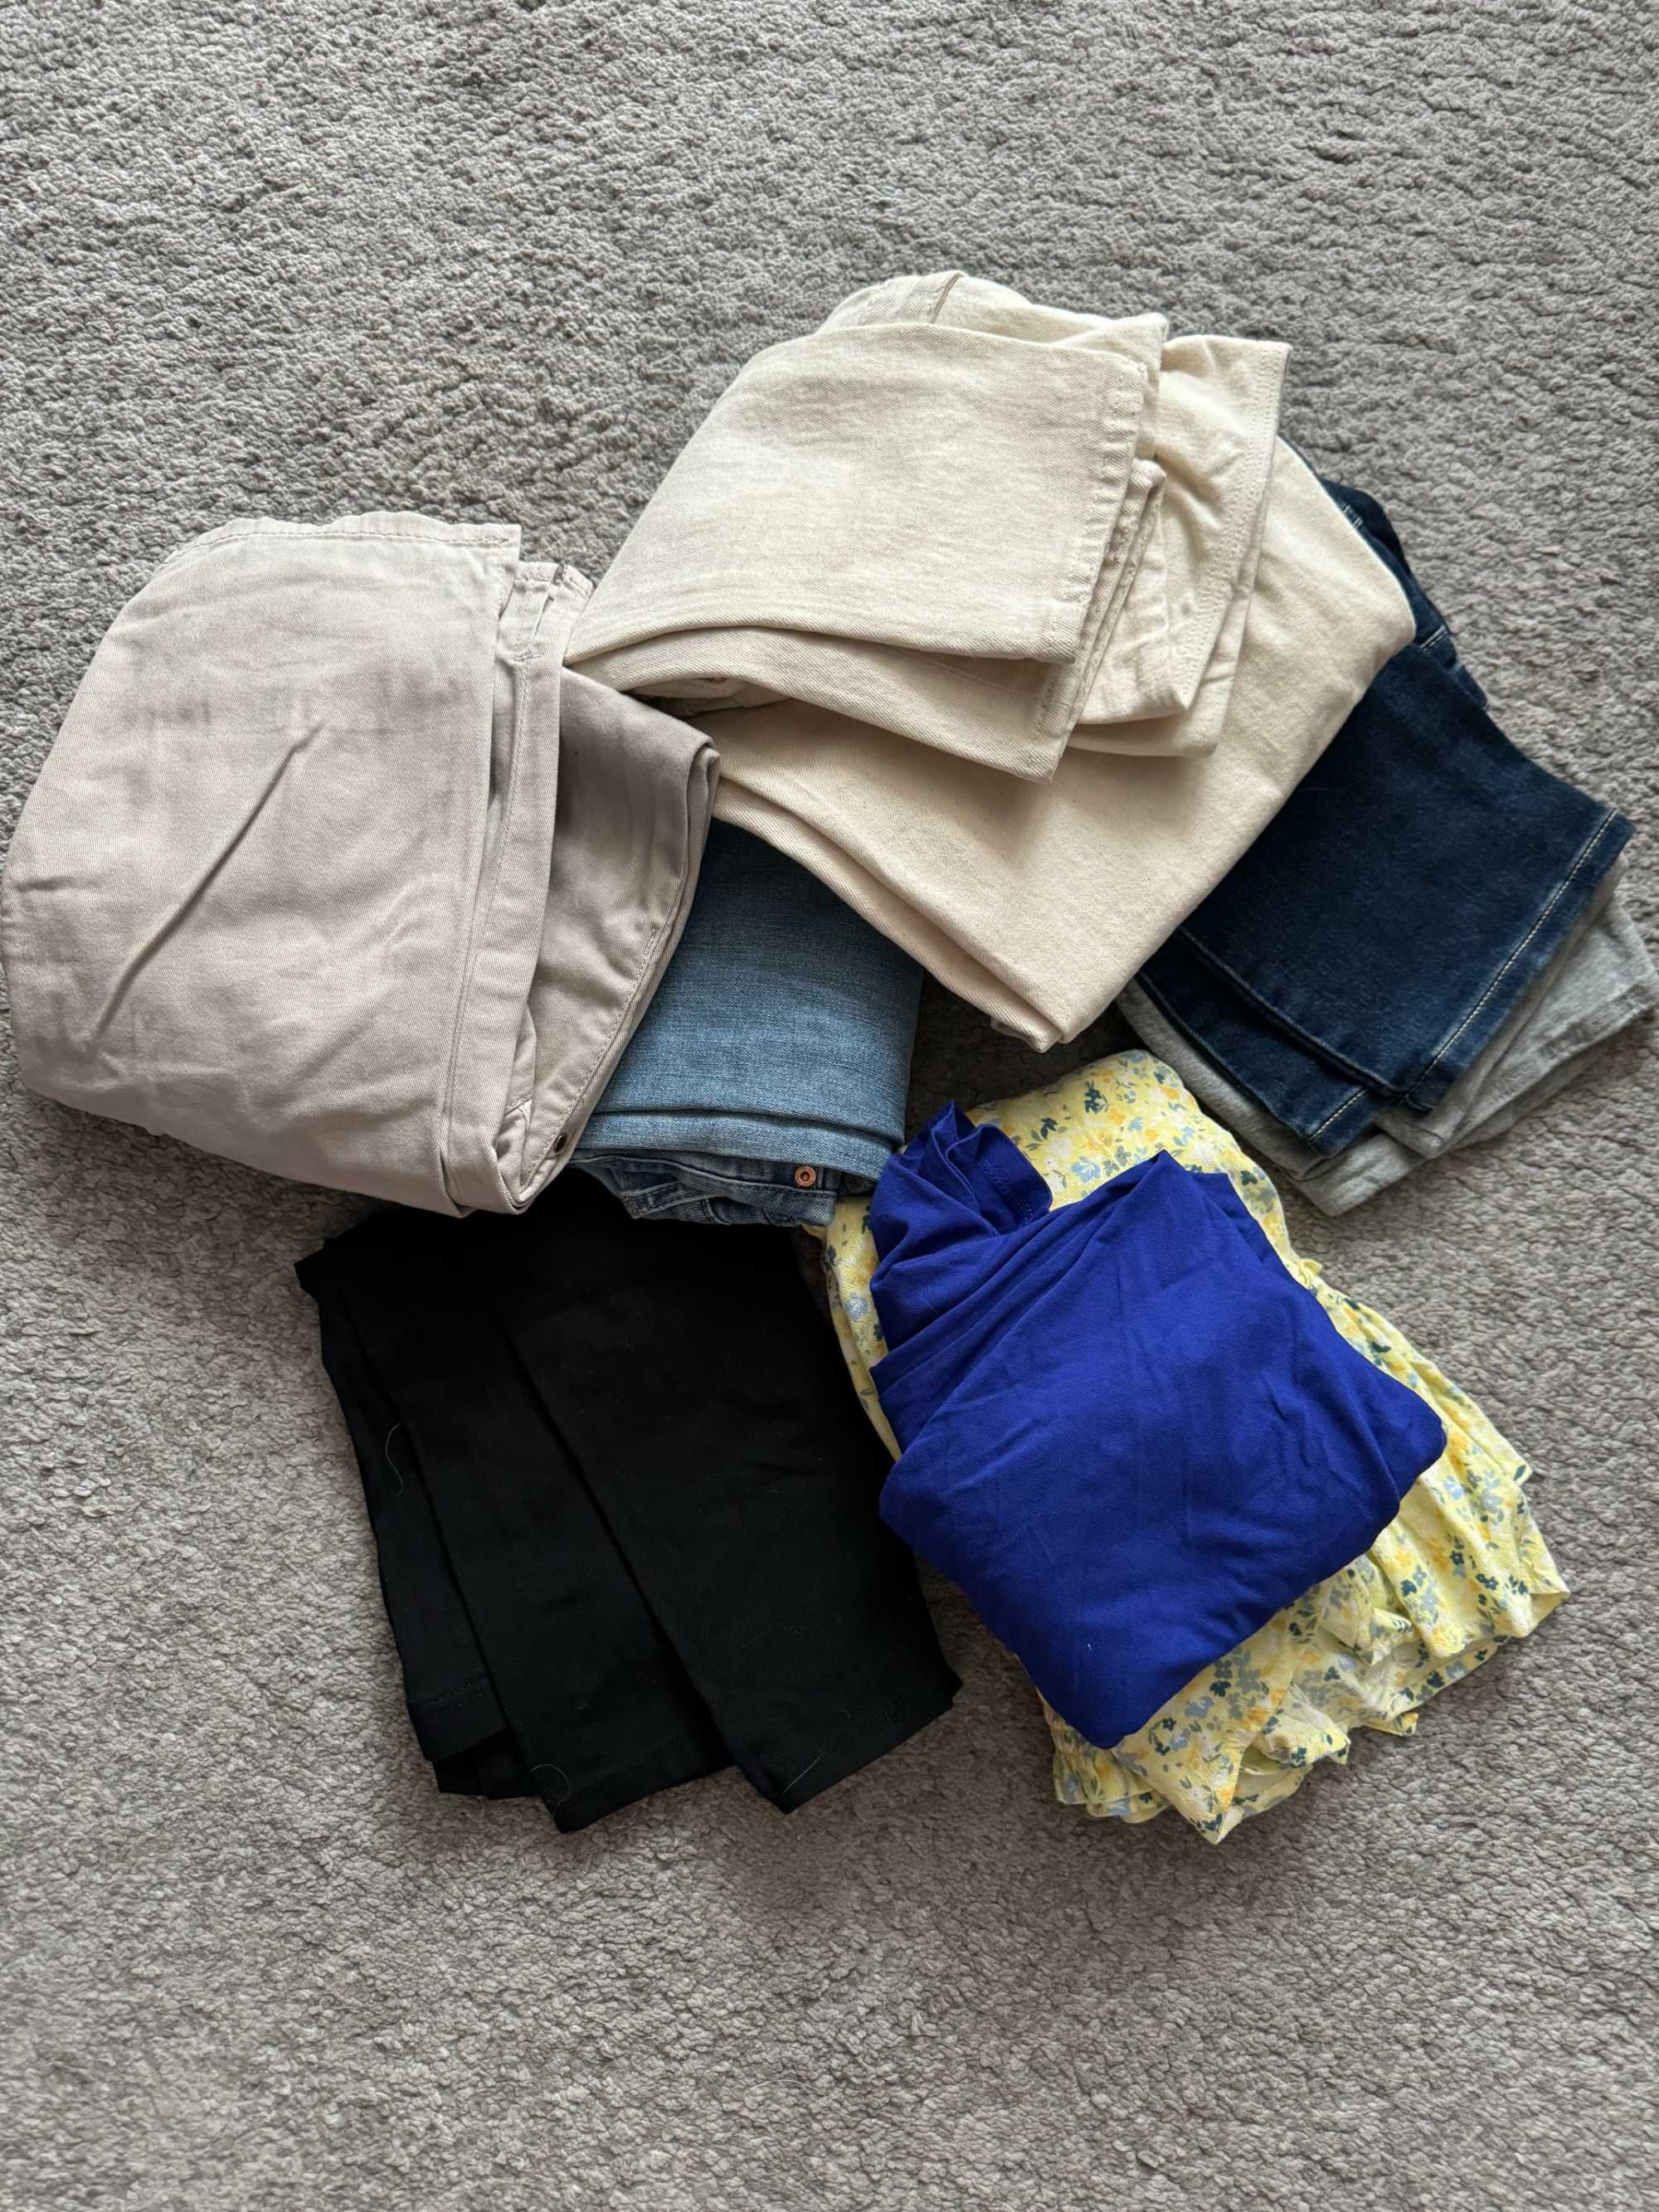 Spodnie ciążowe, S, 36, H&M, C&A 4 sztuki plus leginsy